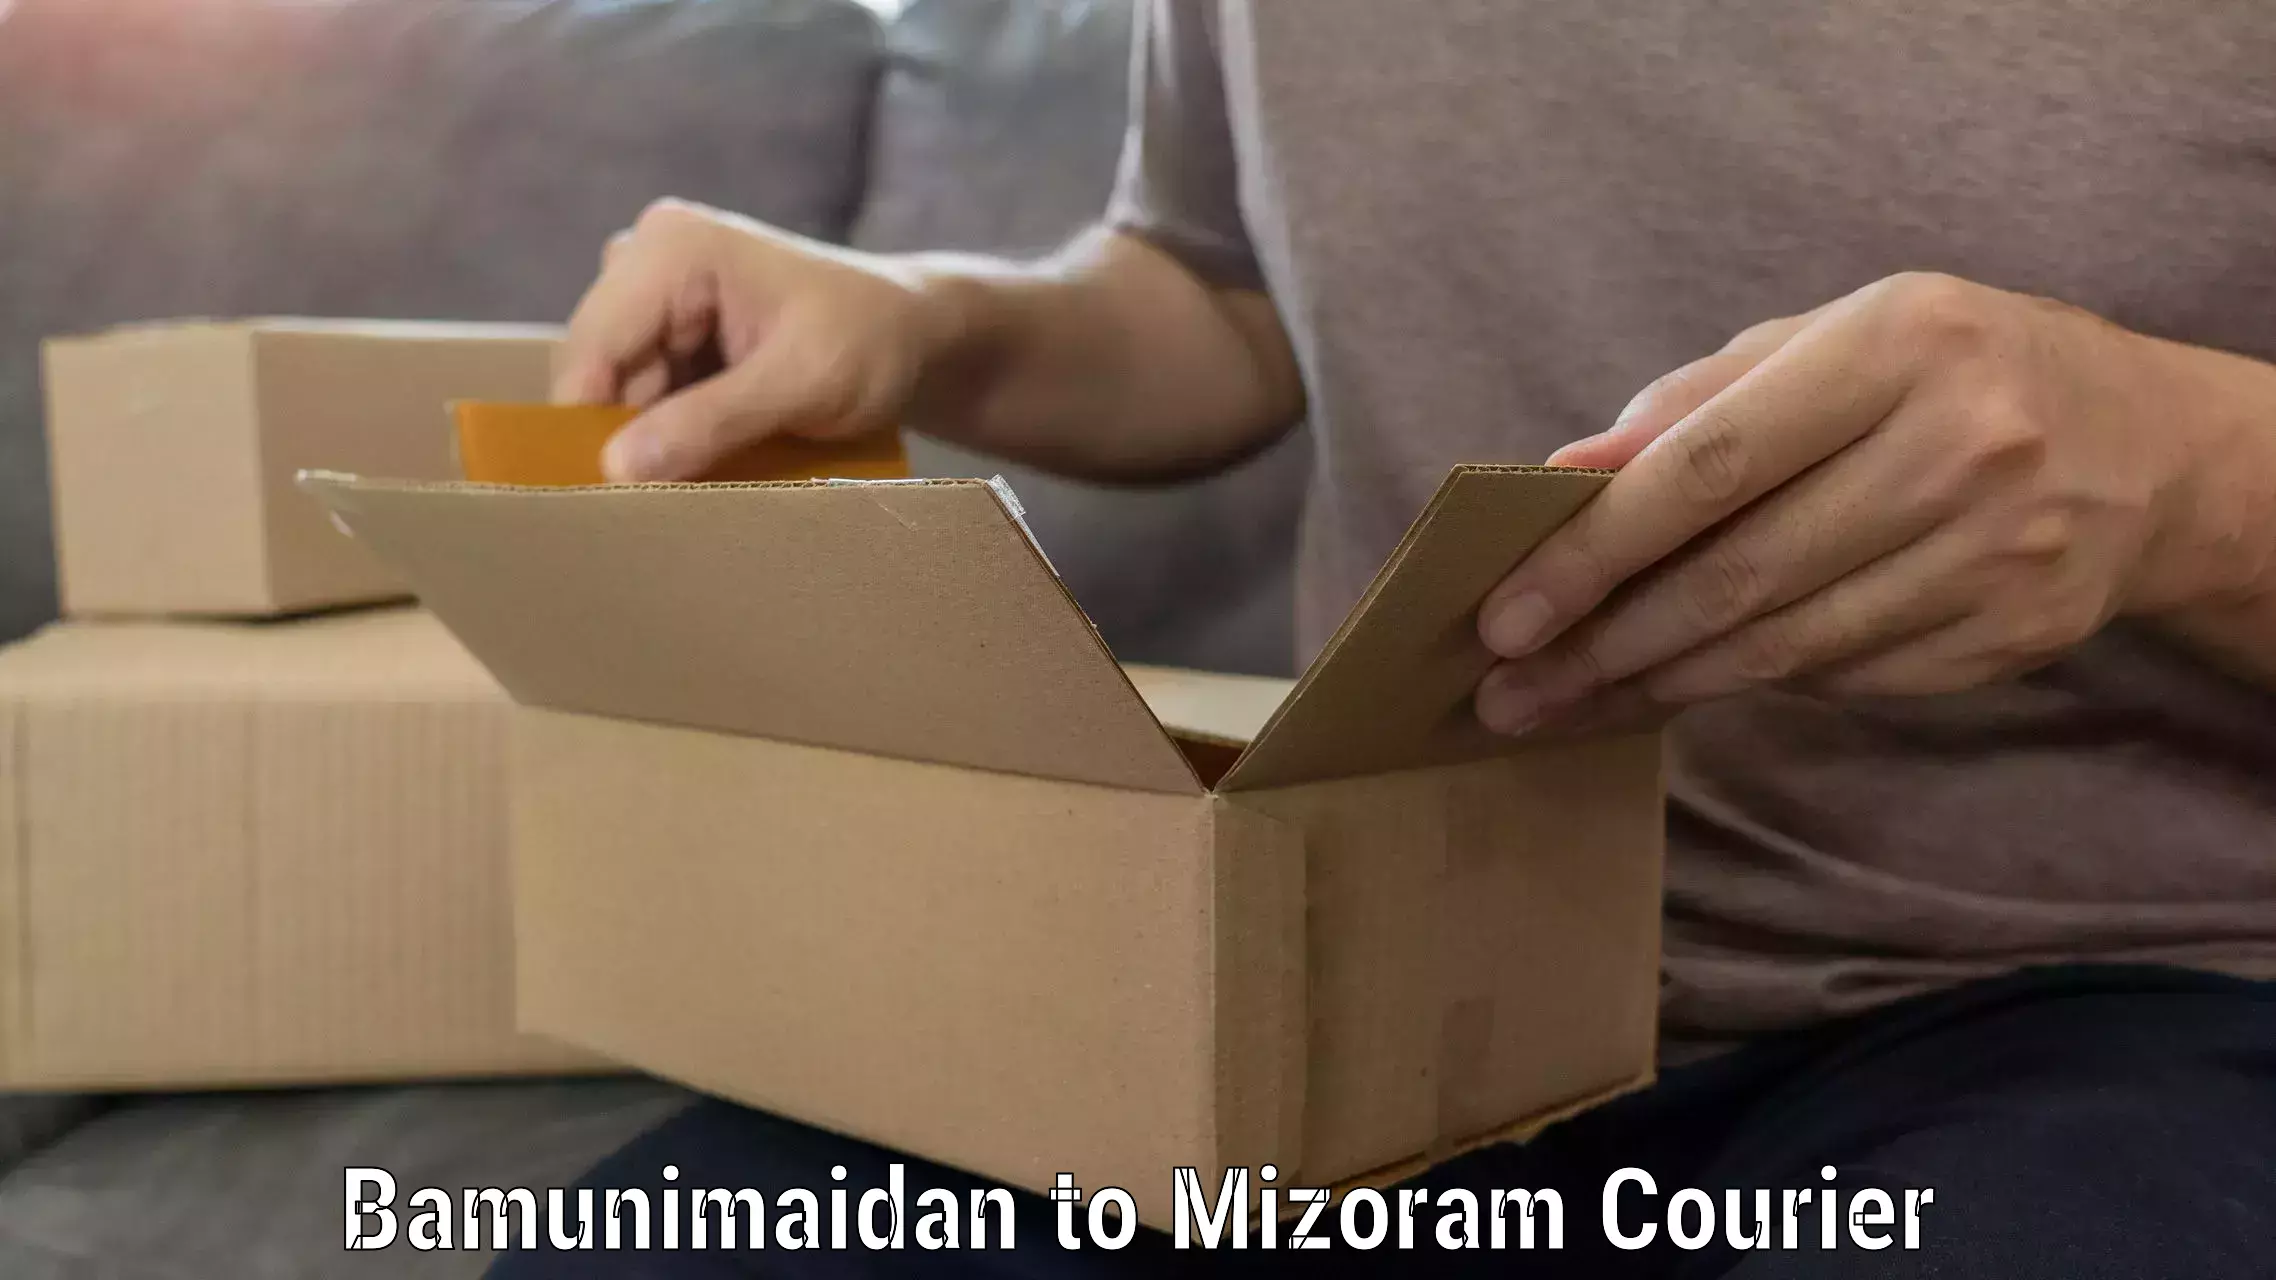 Furniture moving plans in Bamunimaidan to Mizoram